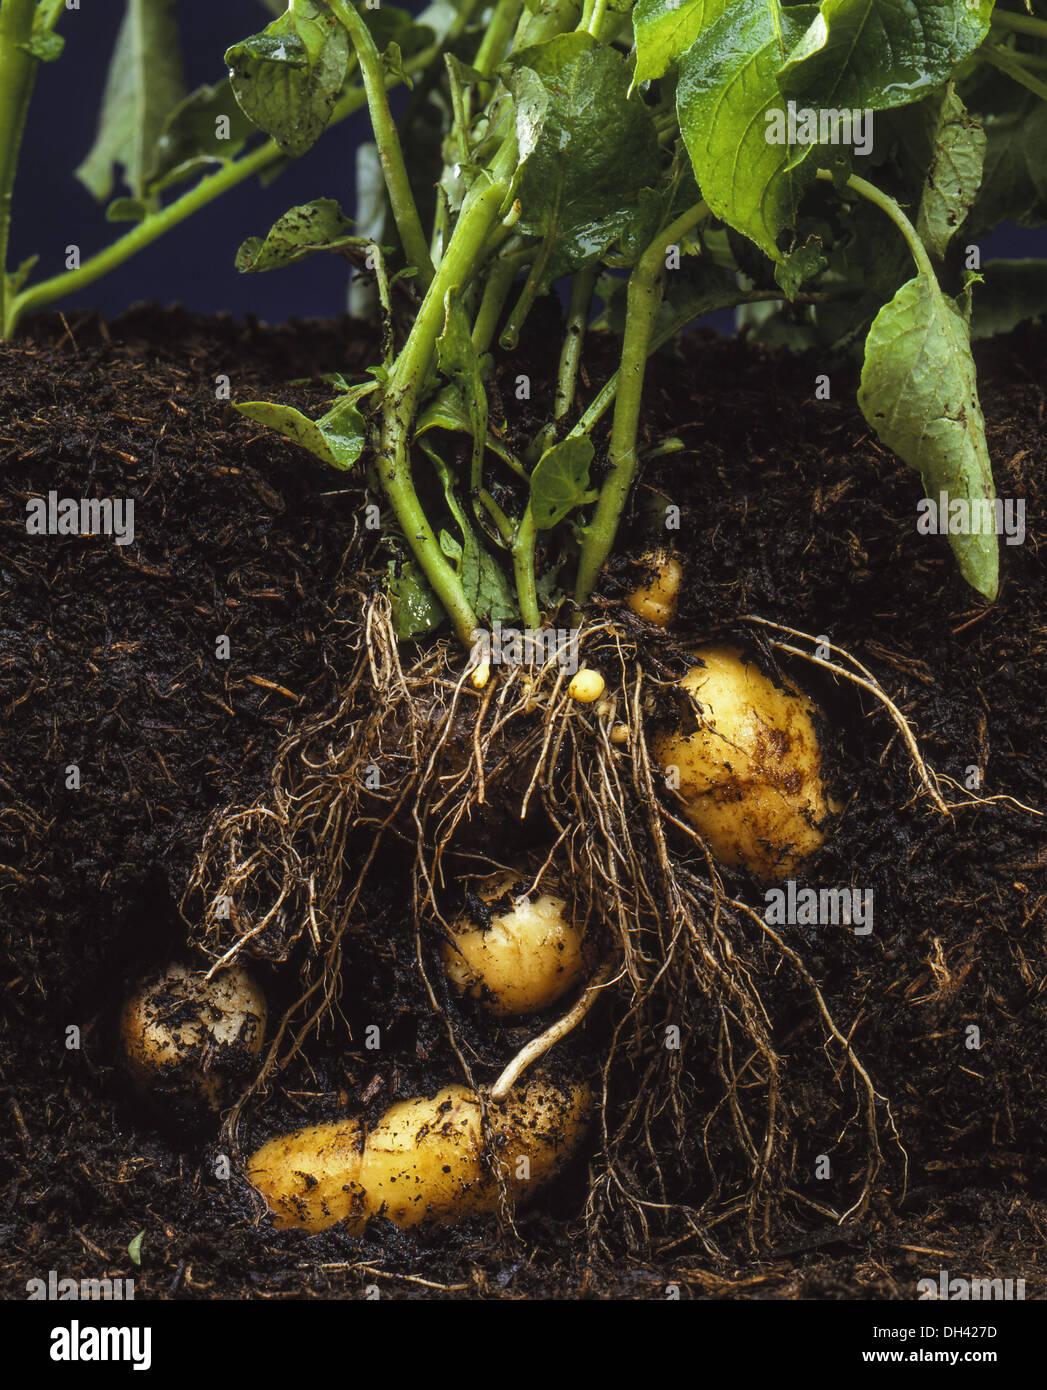 Kartoffeln, Kartoffelpflanze in der Erde Stock Photo